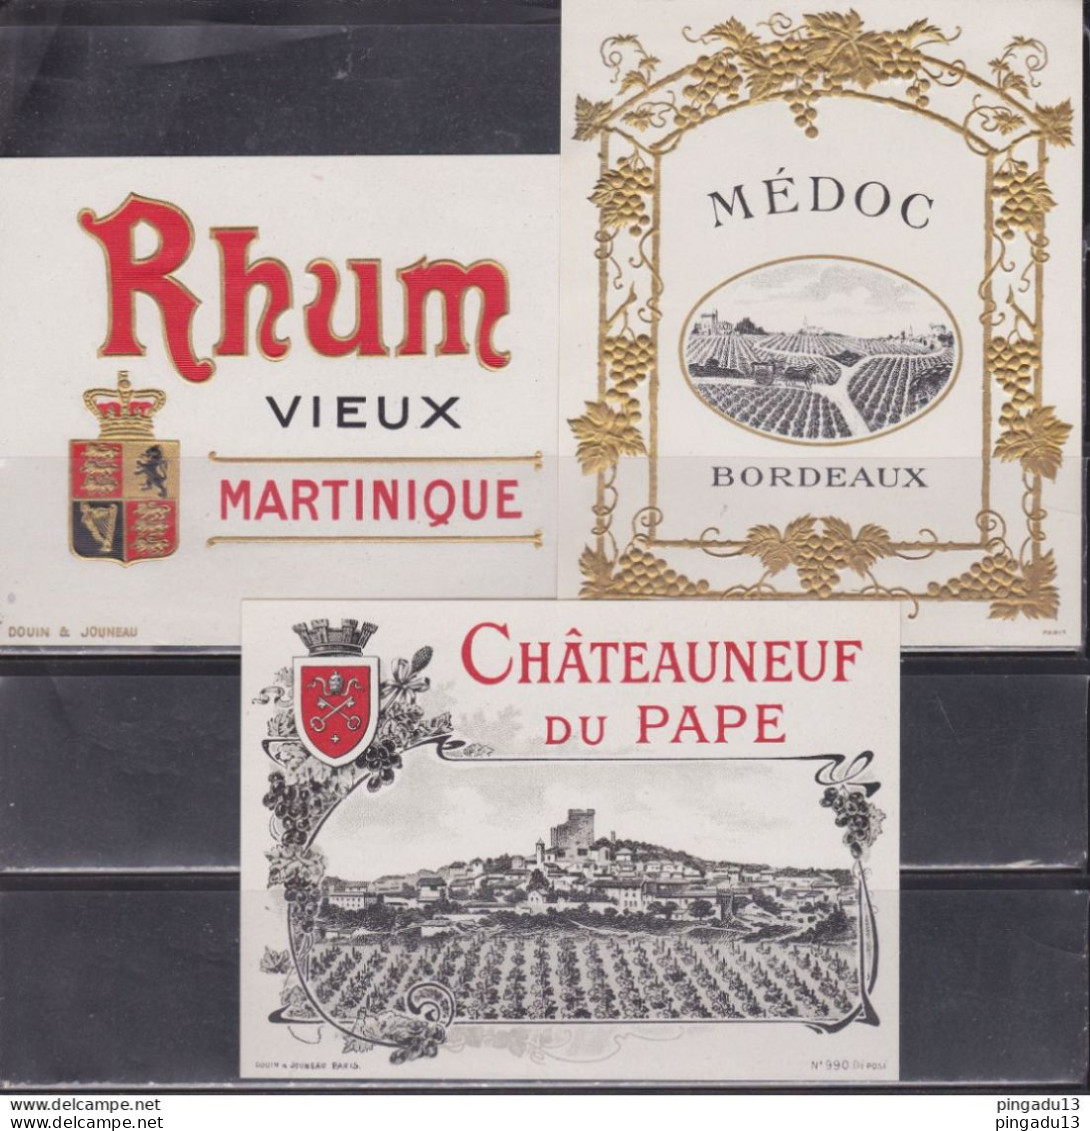 Prix courant année 1923 Douin Jouneau étiquette vin alcool Rhum ... pour Mourre Berlioux distillateur Marseille